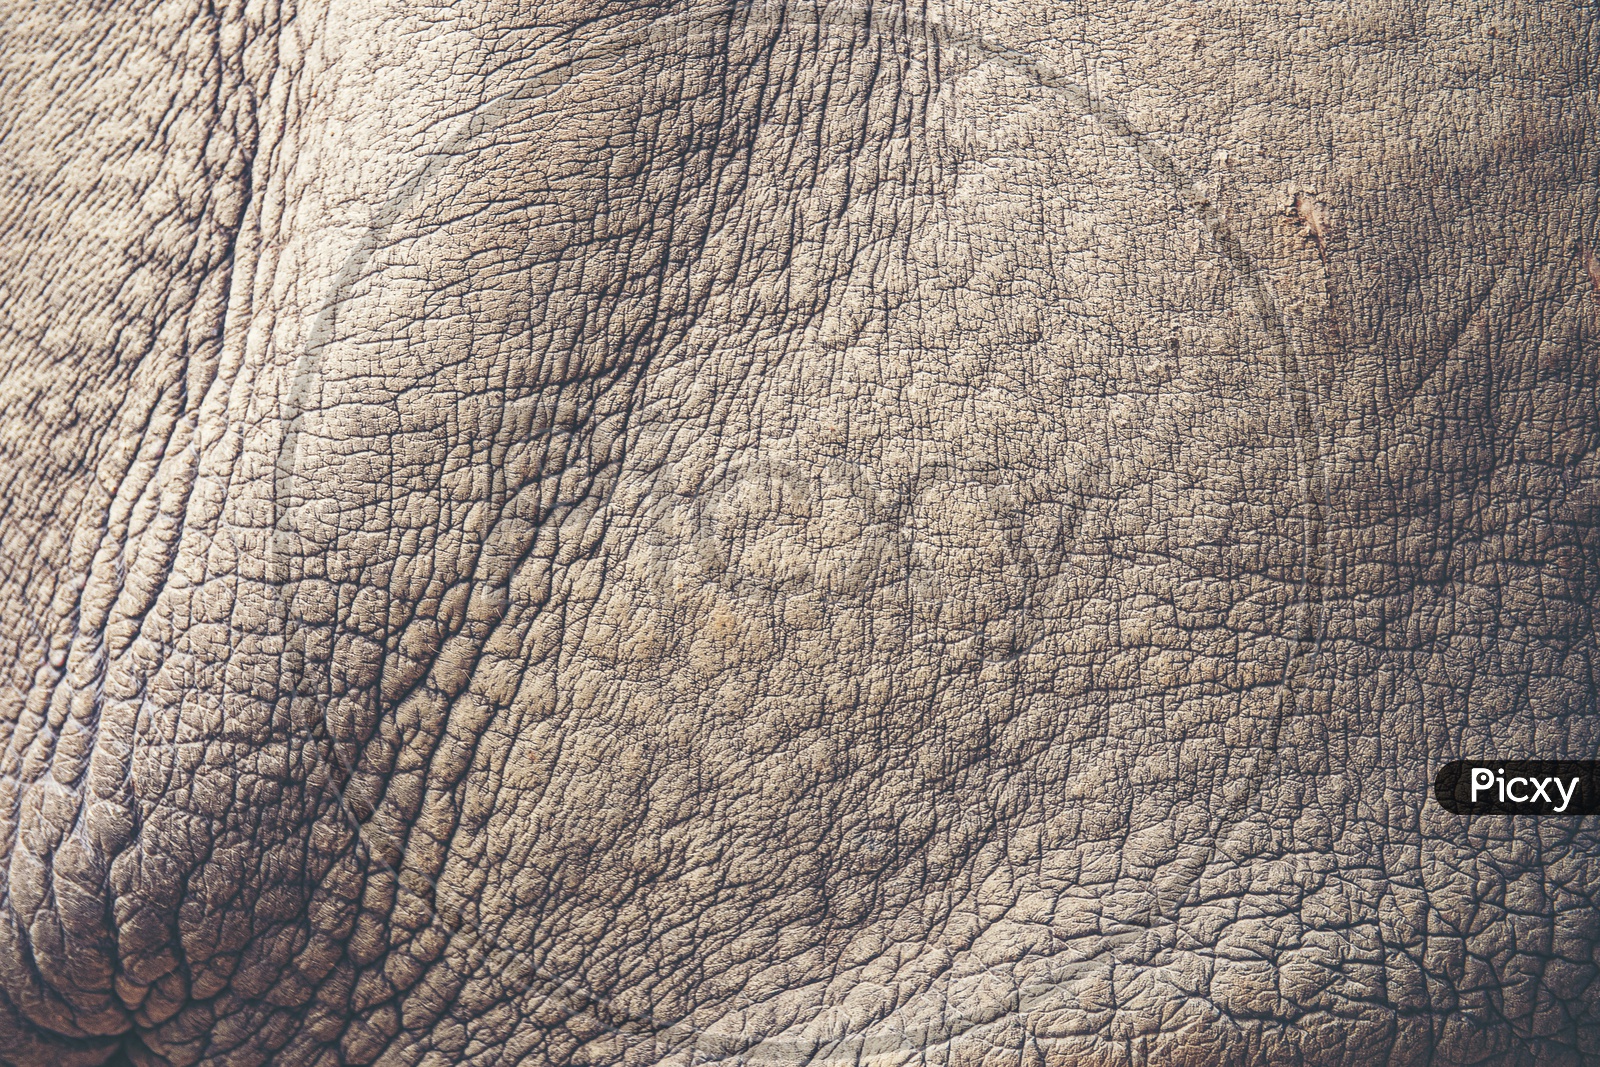 Texture of rhino skin